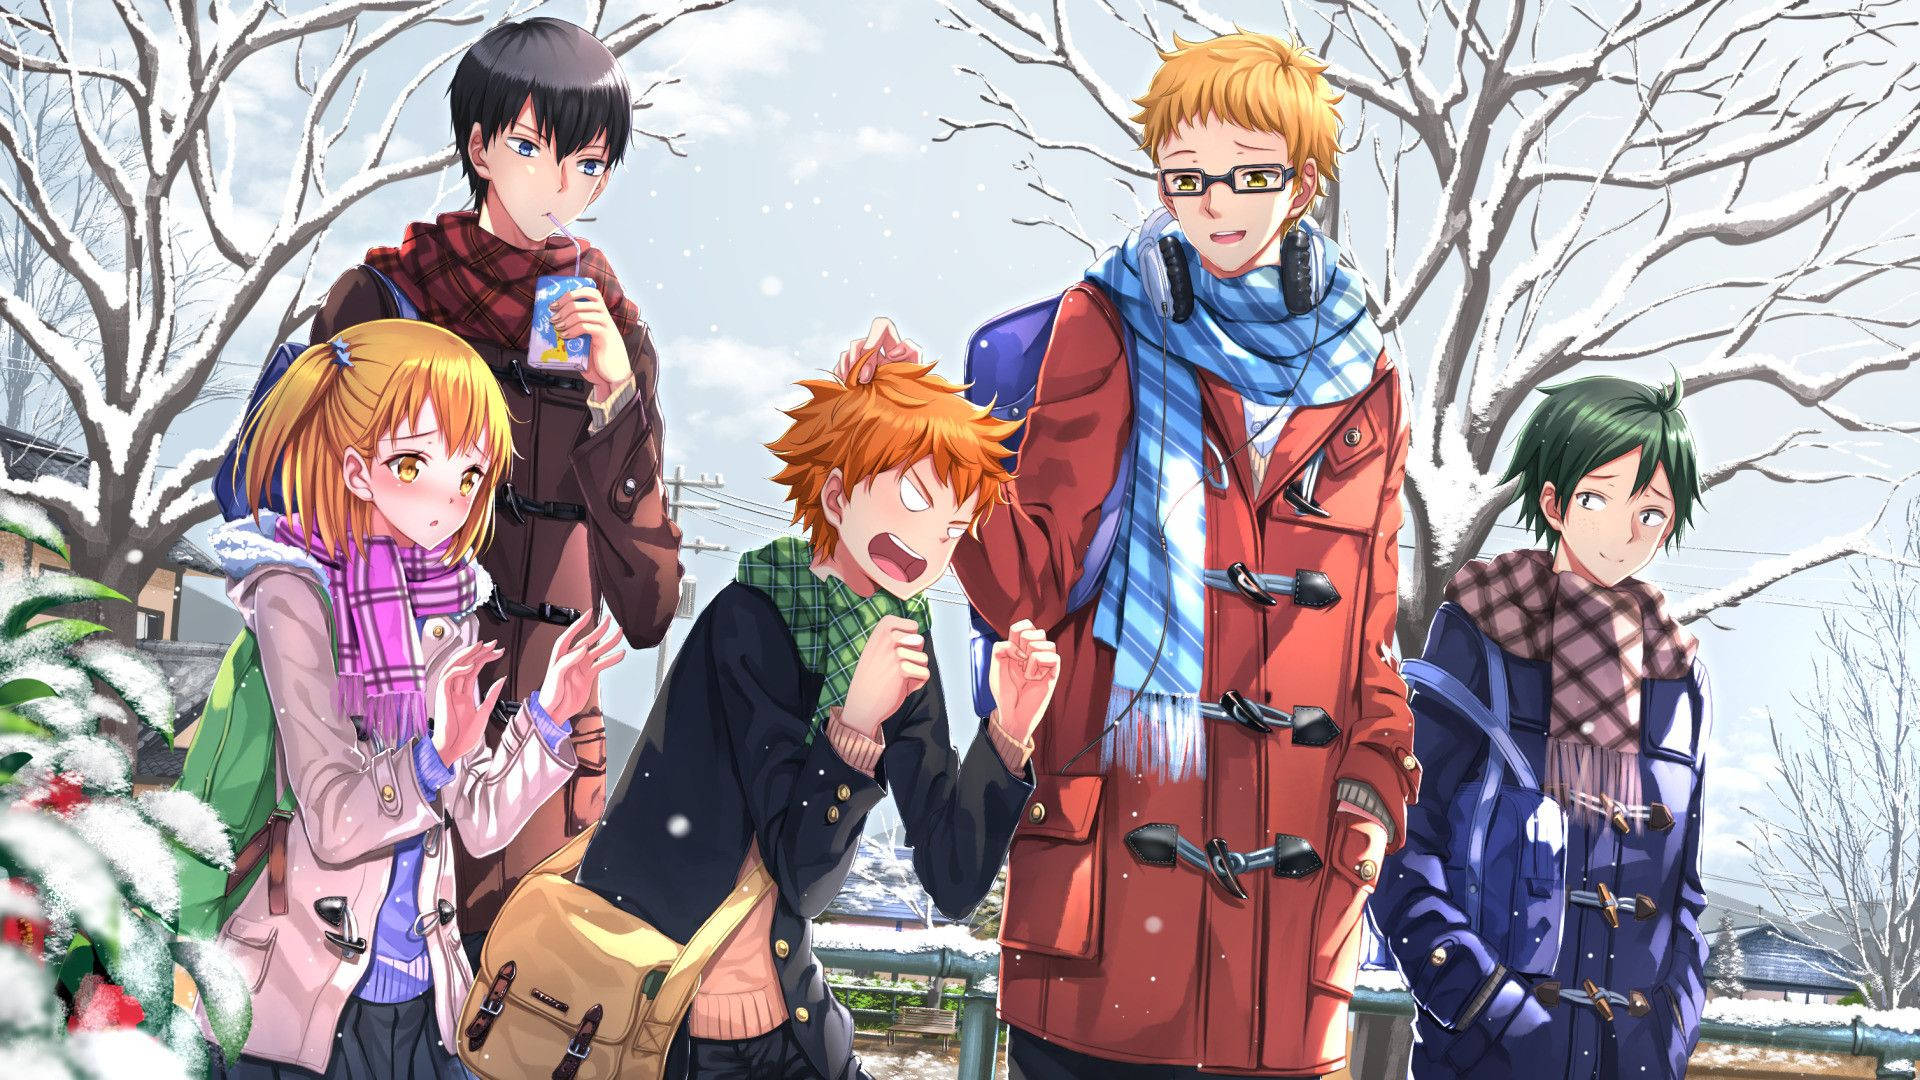 Keitsukishima Und Freunde An Einem Wintertag Wallpaper